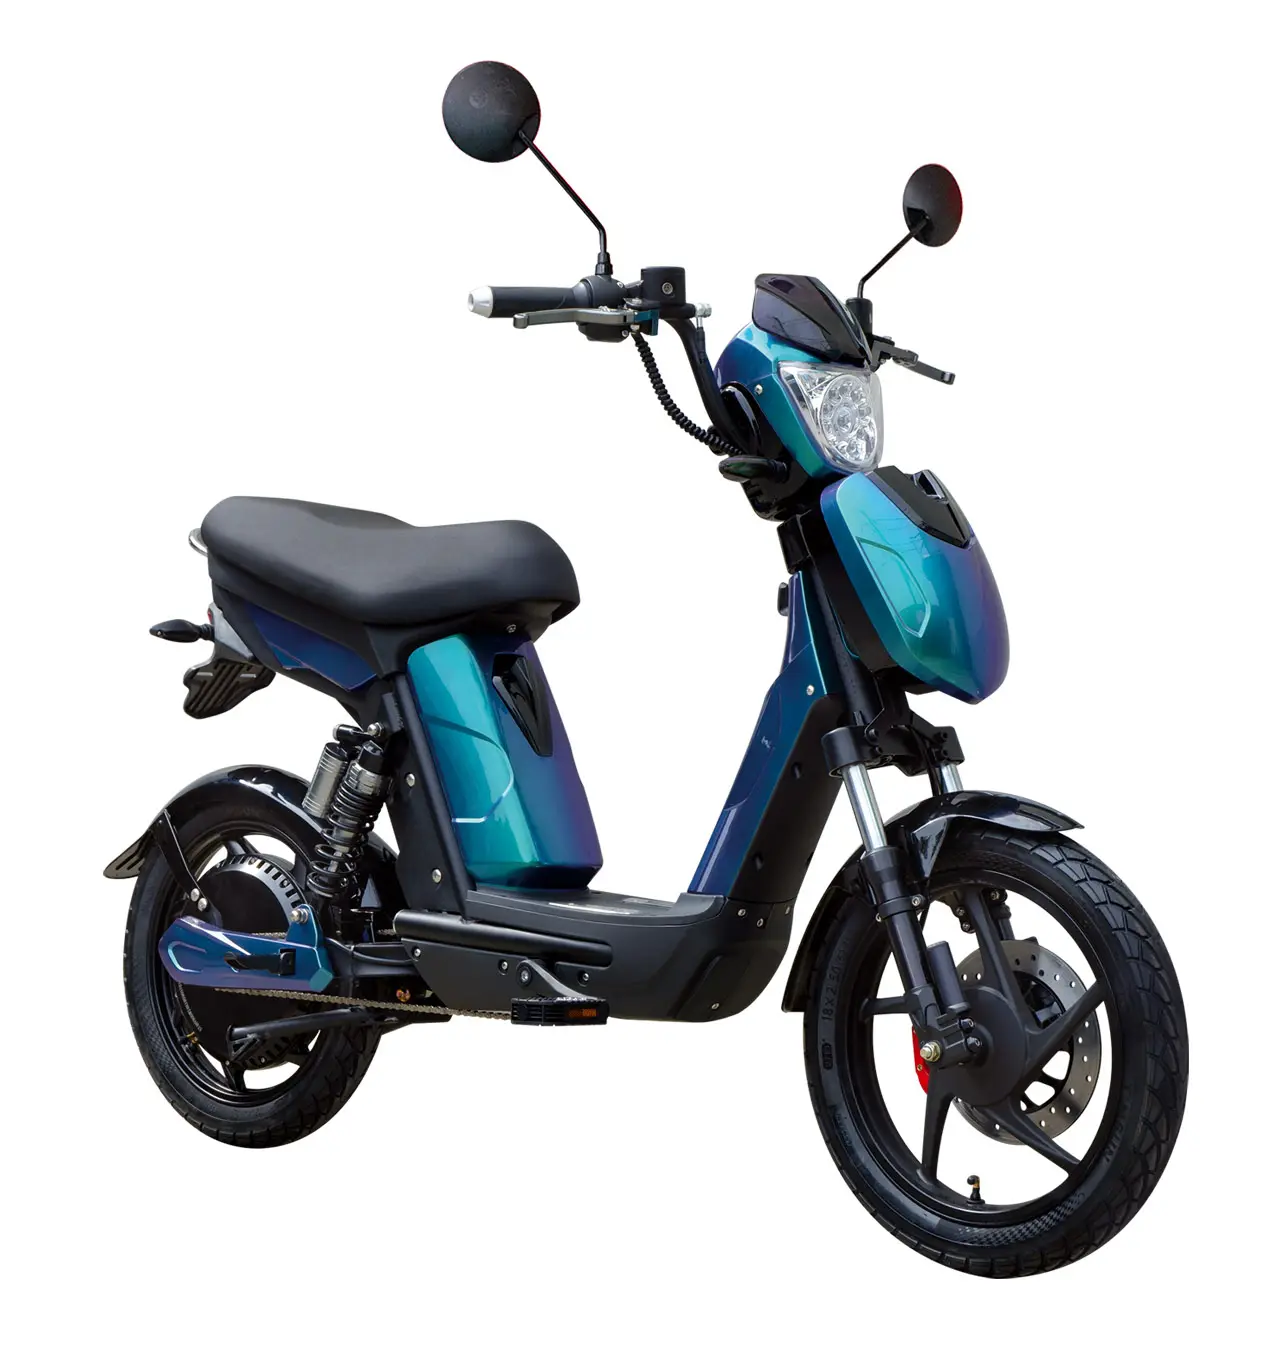 Almanya fransa ithalat bangladeş harley x9 scooter su geçirmez yüksek hızlı iki tekerlekli elektrikli moped çin'den itmeli kaydırak fiyat